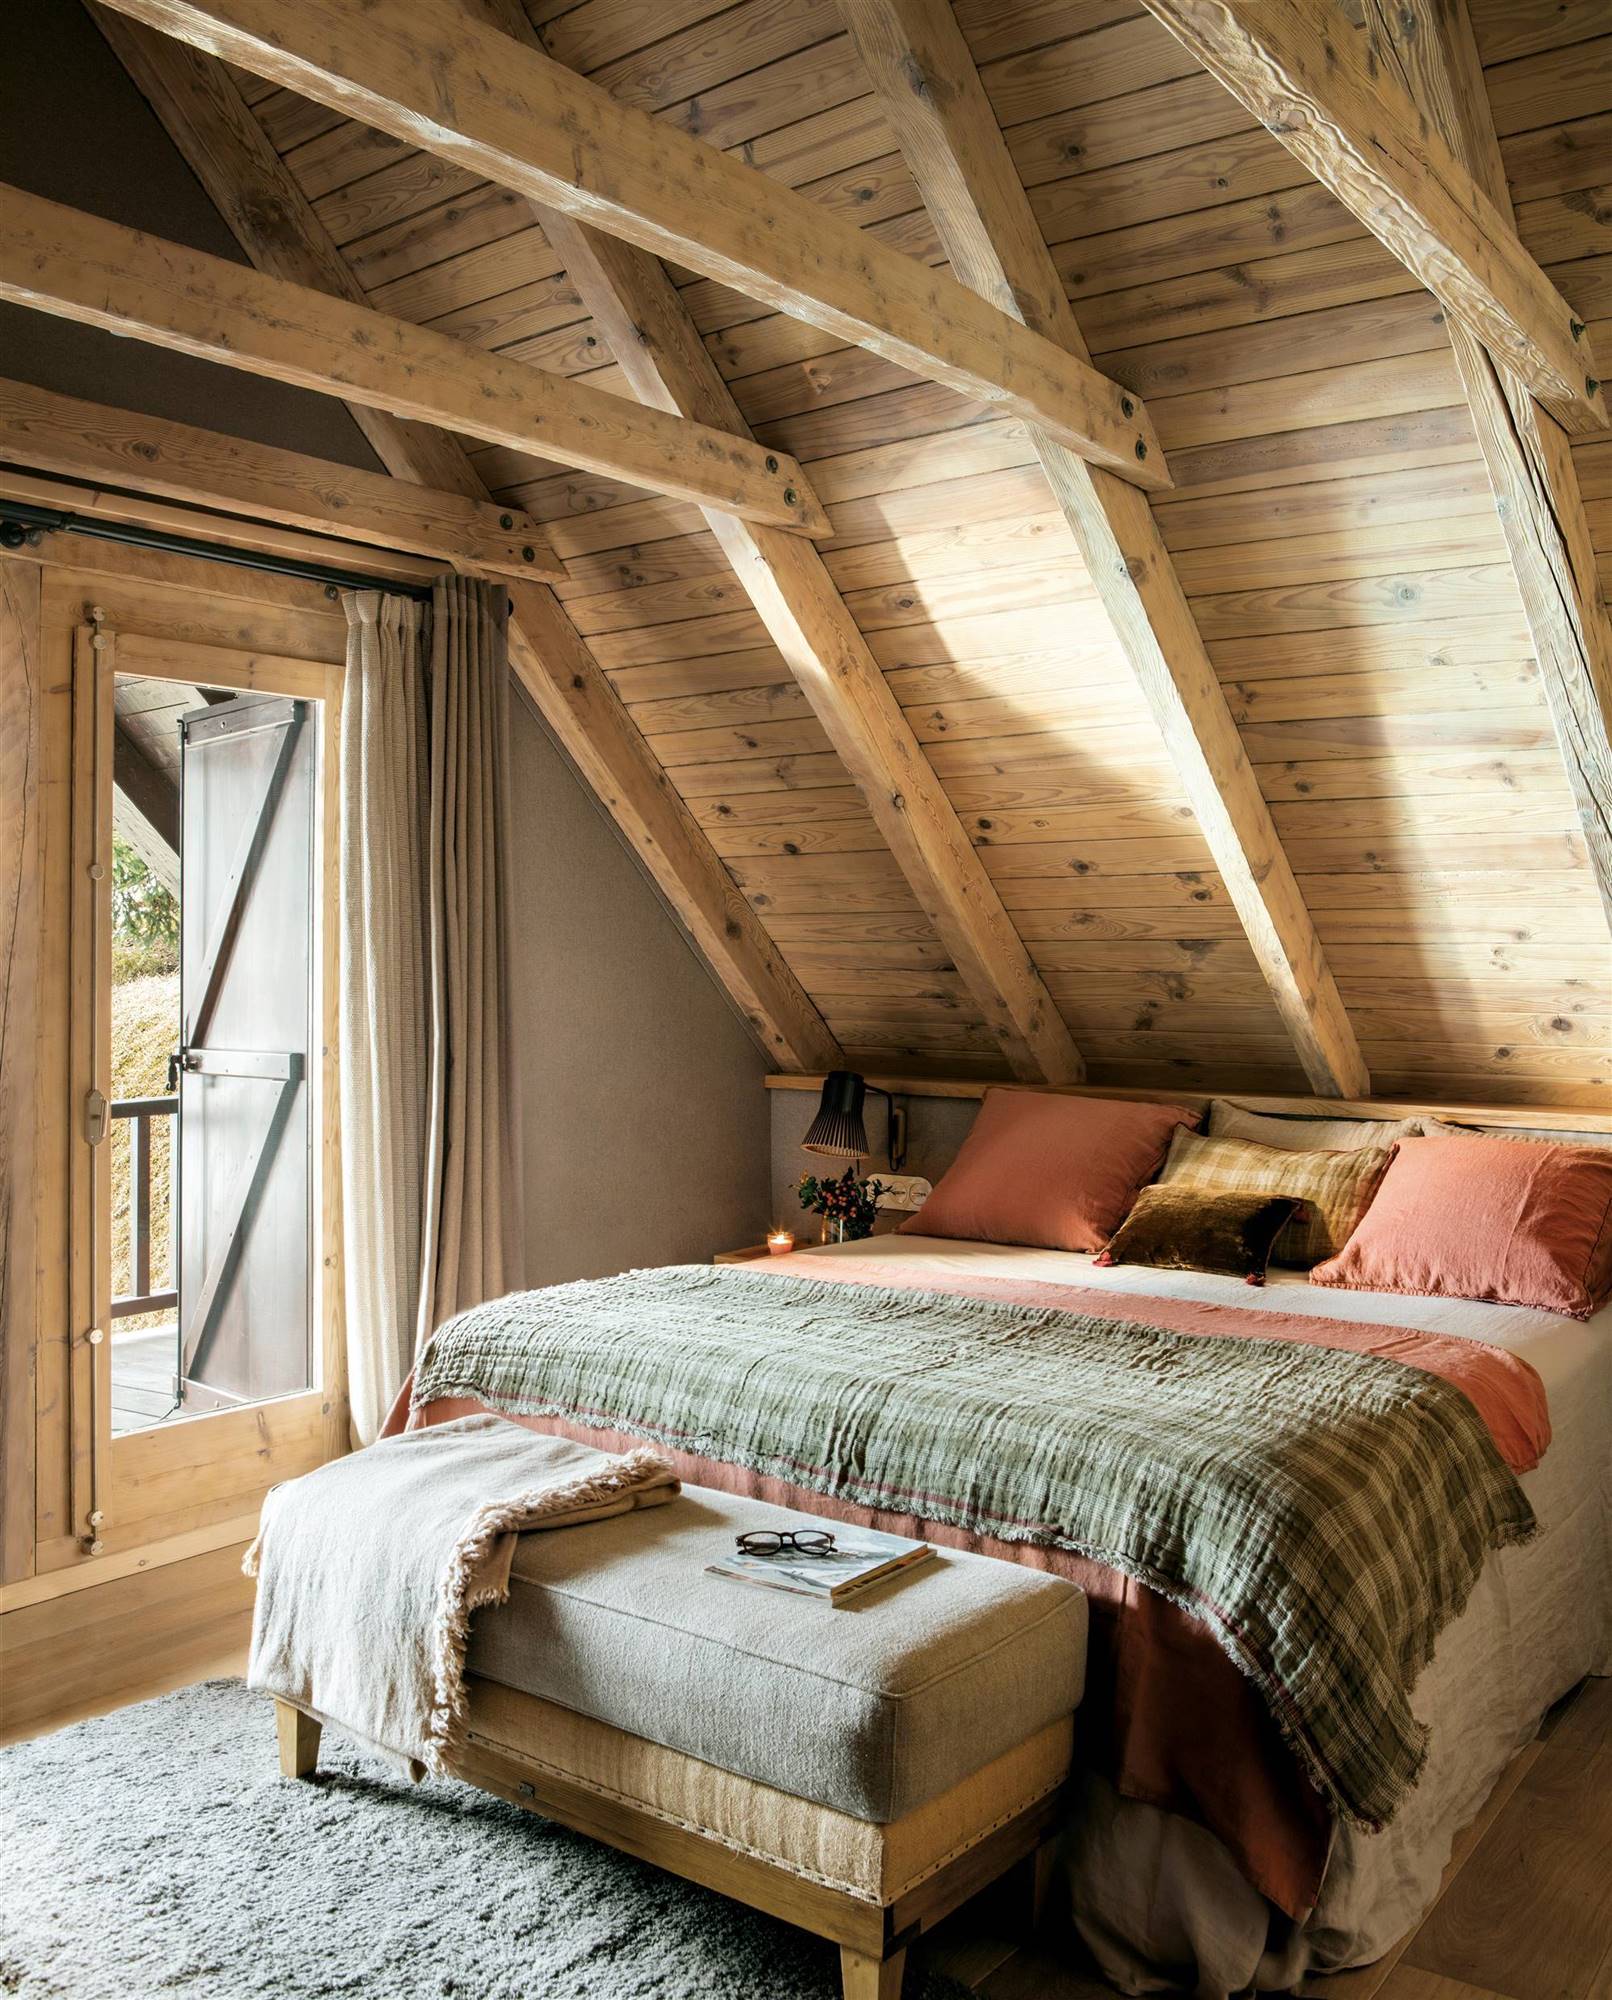 Dormitorio rústico con vigas de madera.